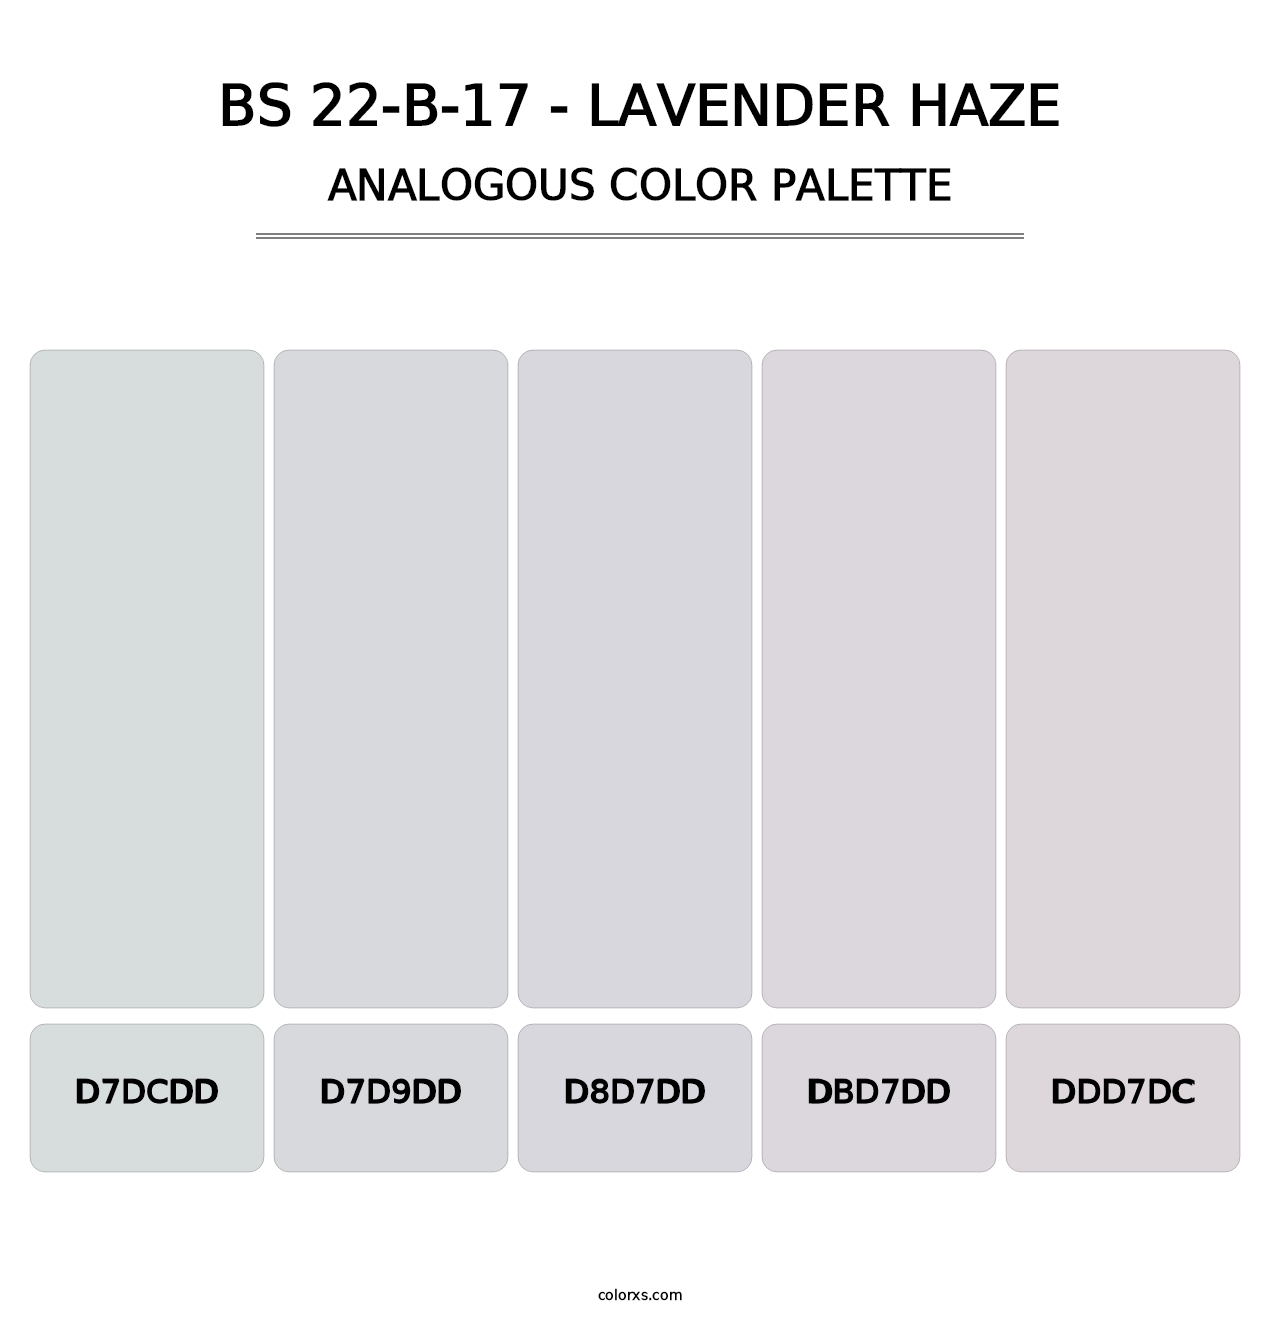 BS 22-B-17 - Lavender Haze - Analogous Color Palette